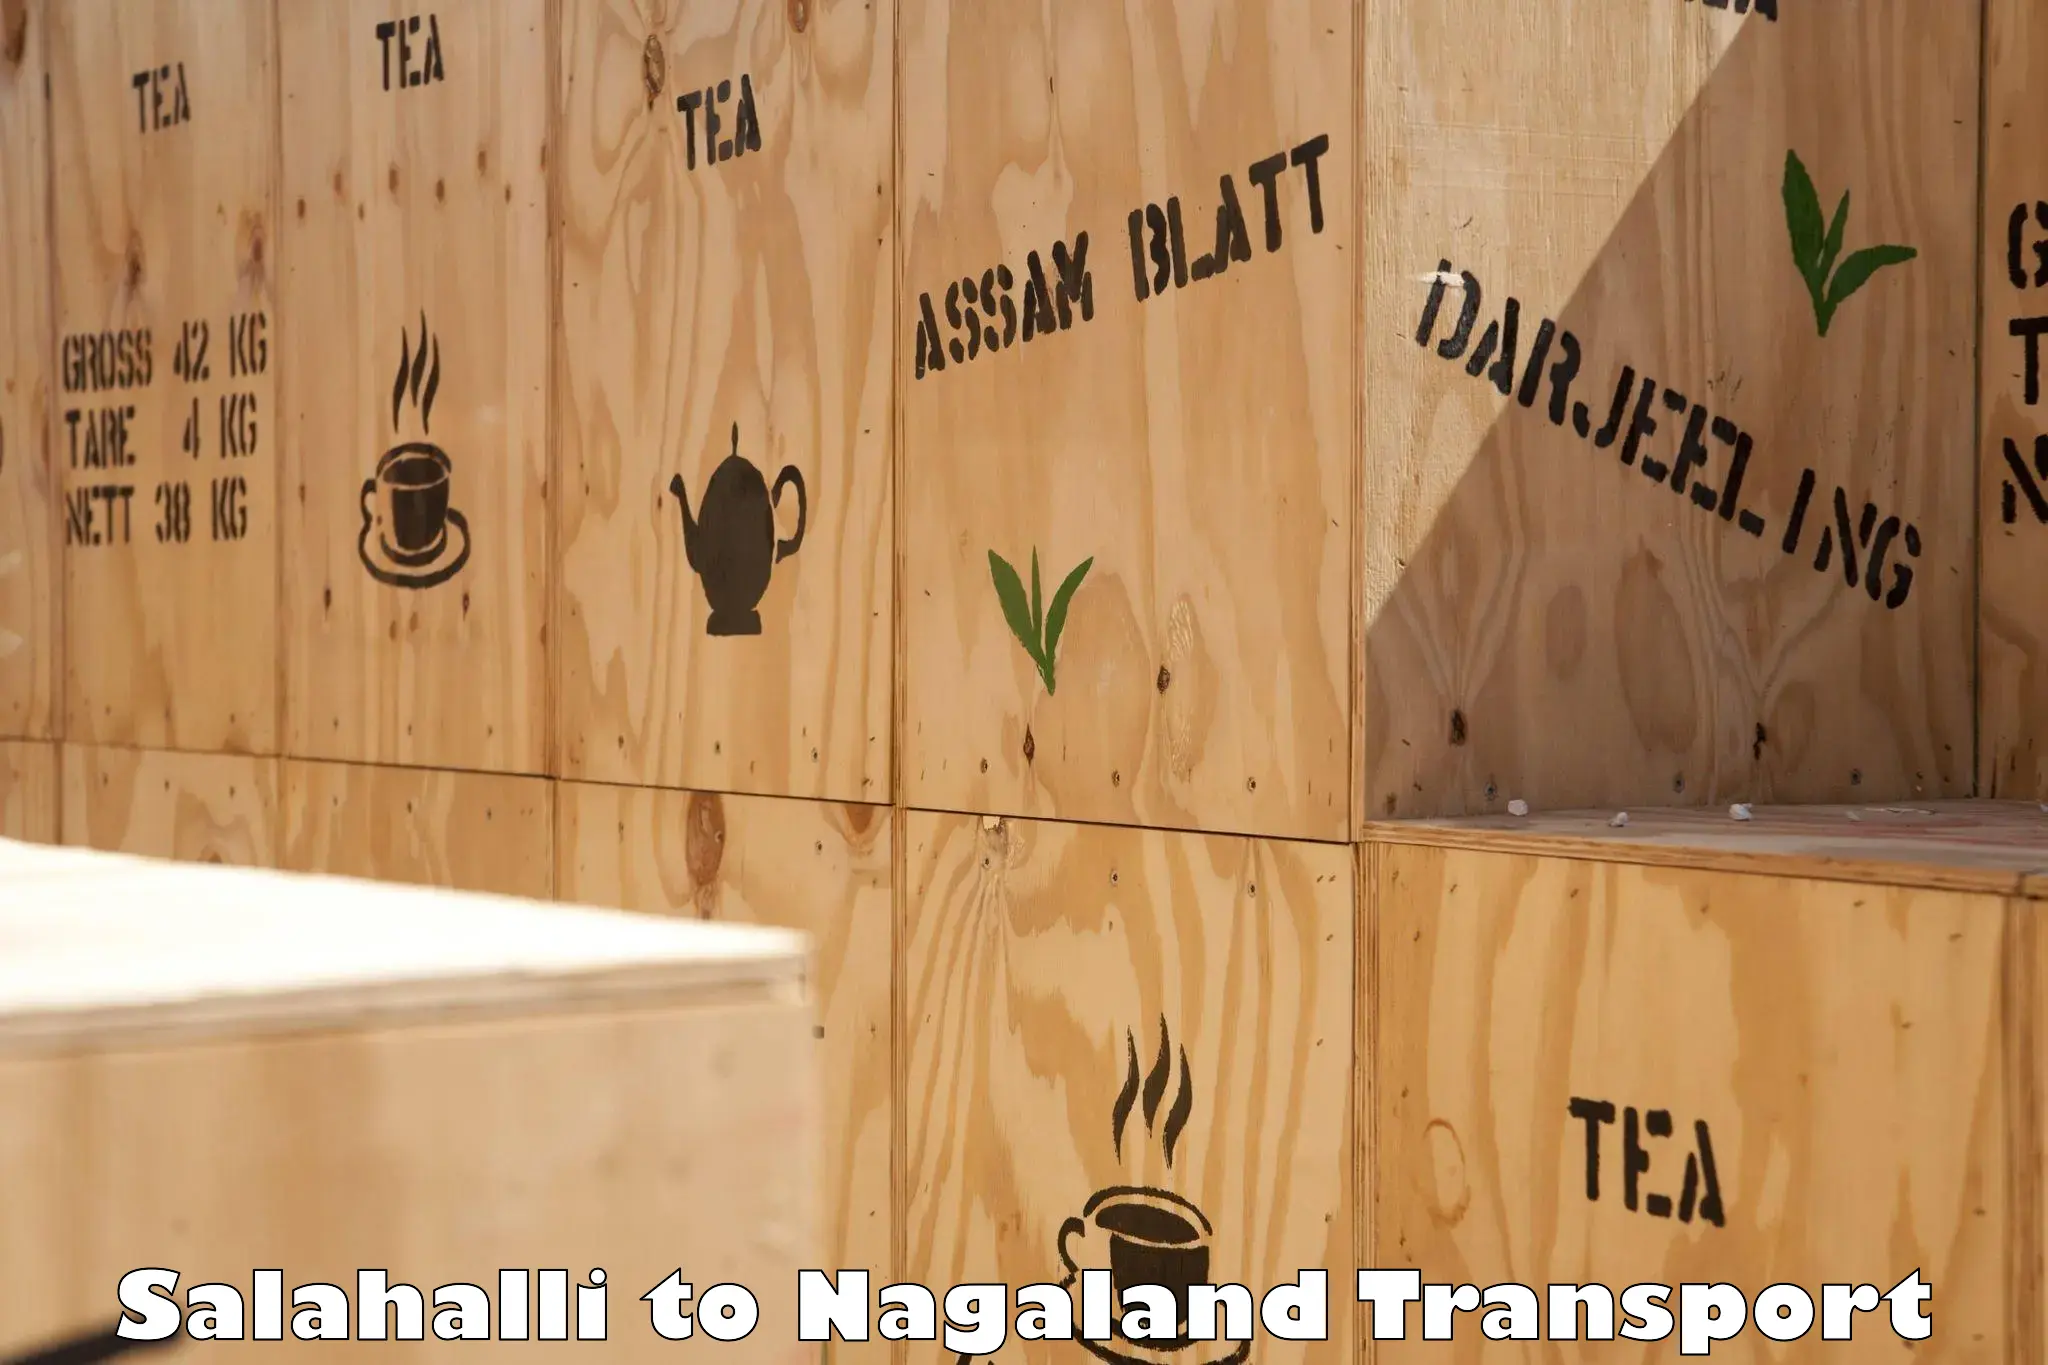 Cargo transportation services Salahalli to Nagaland